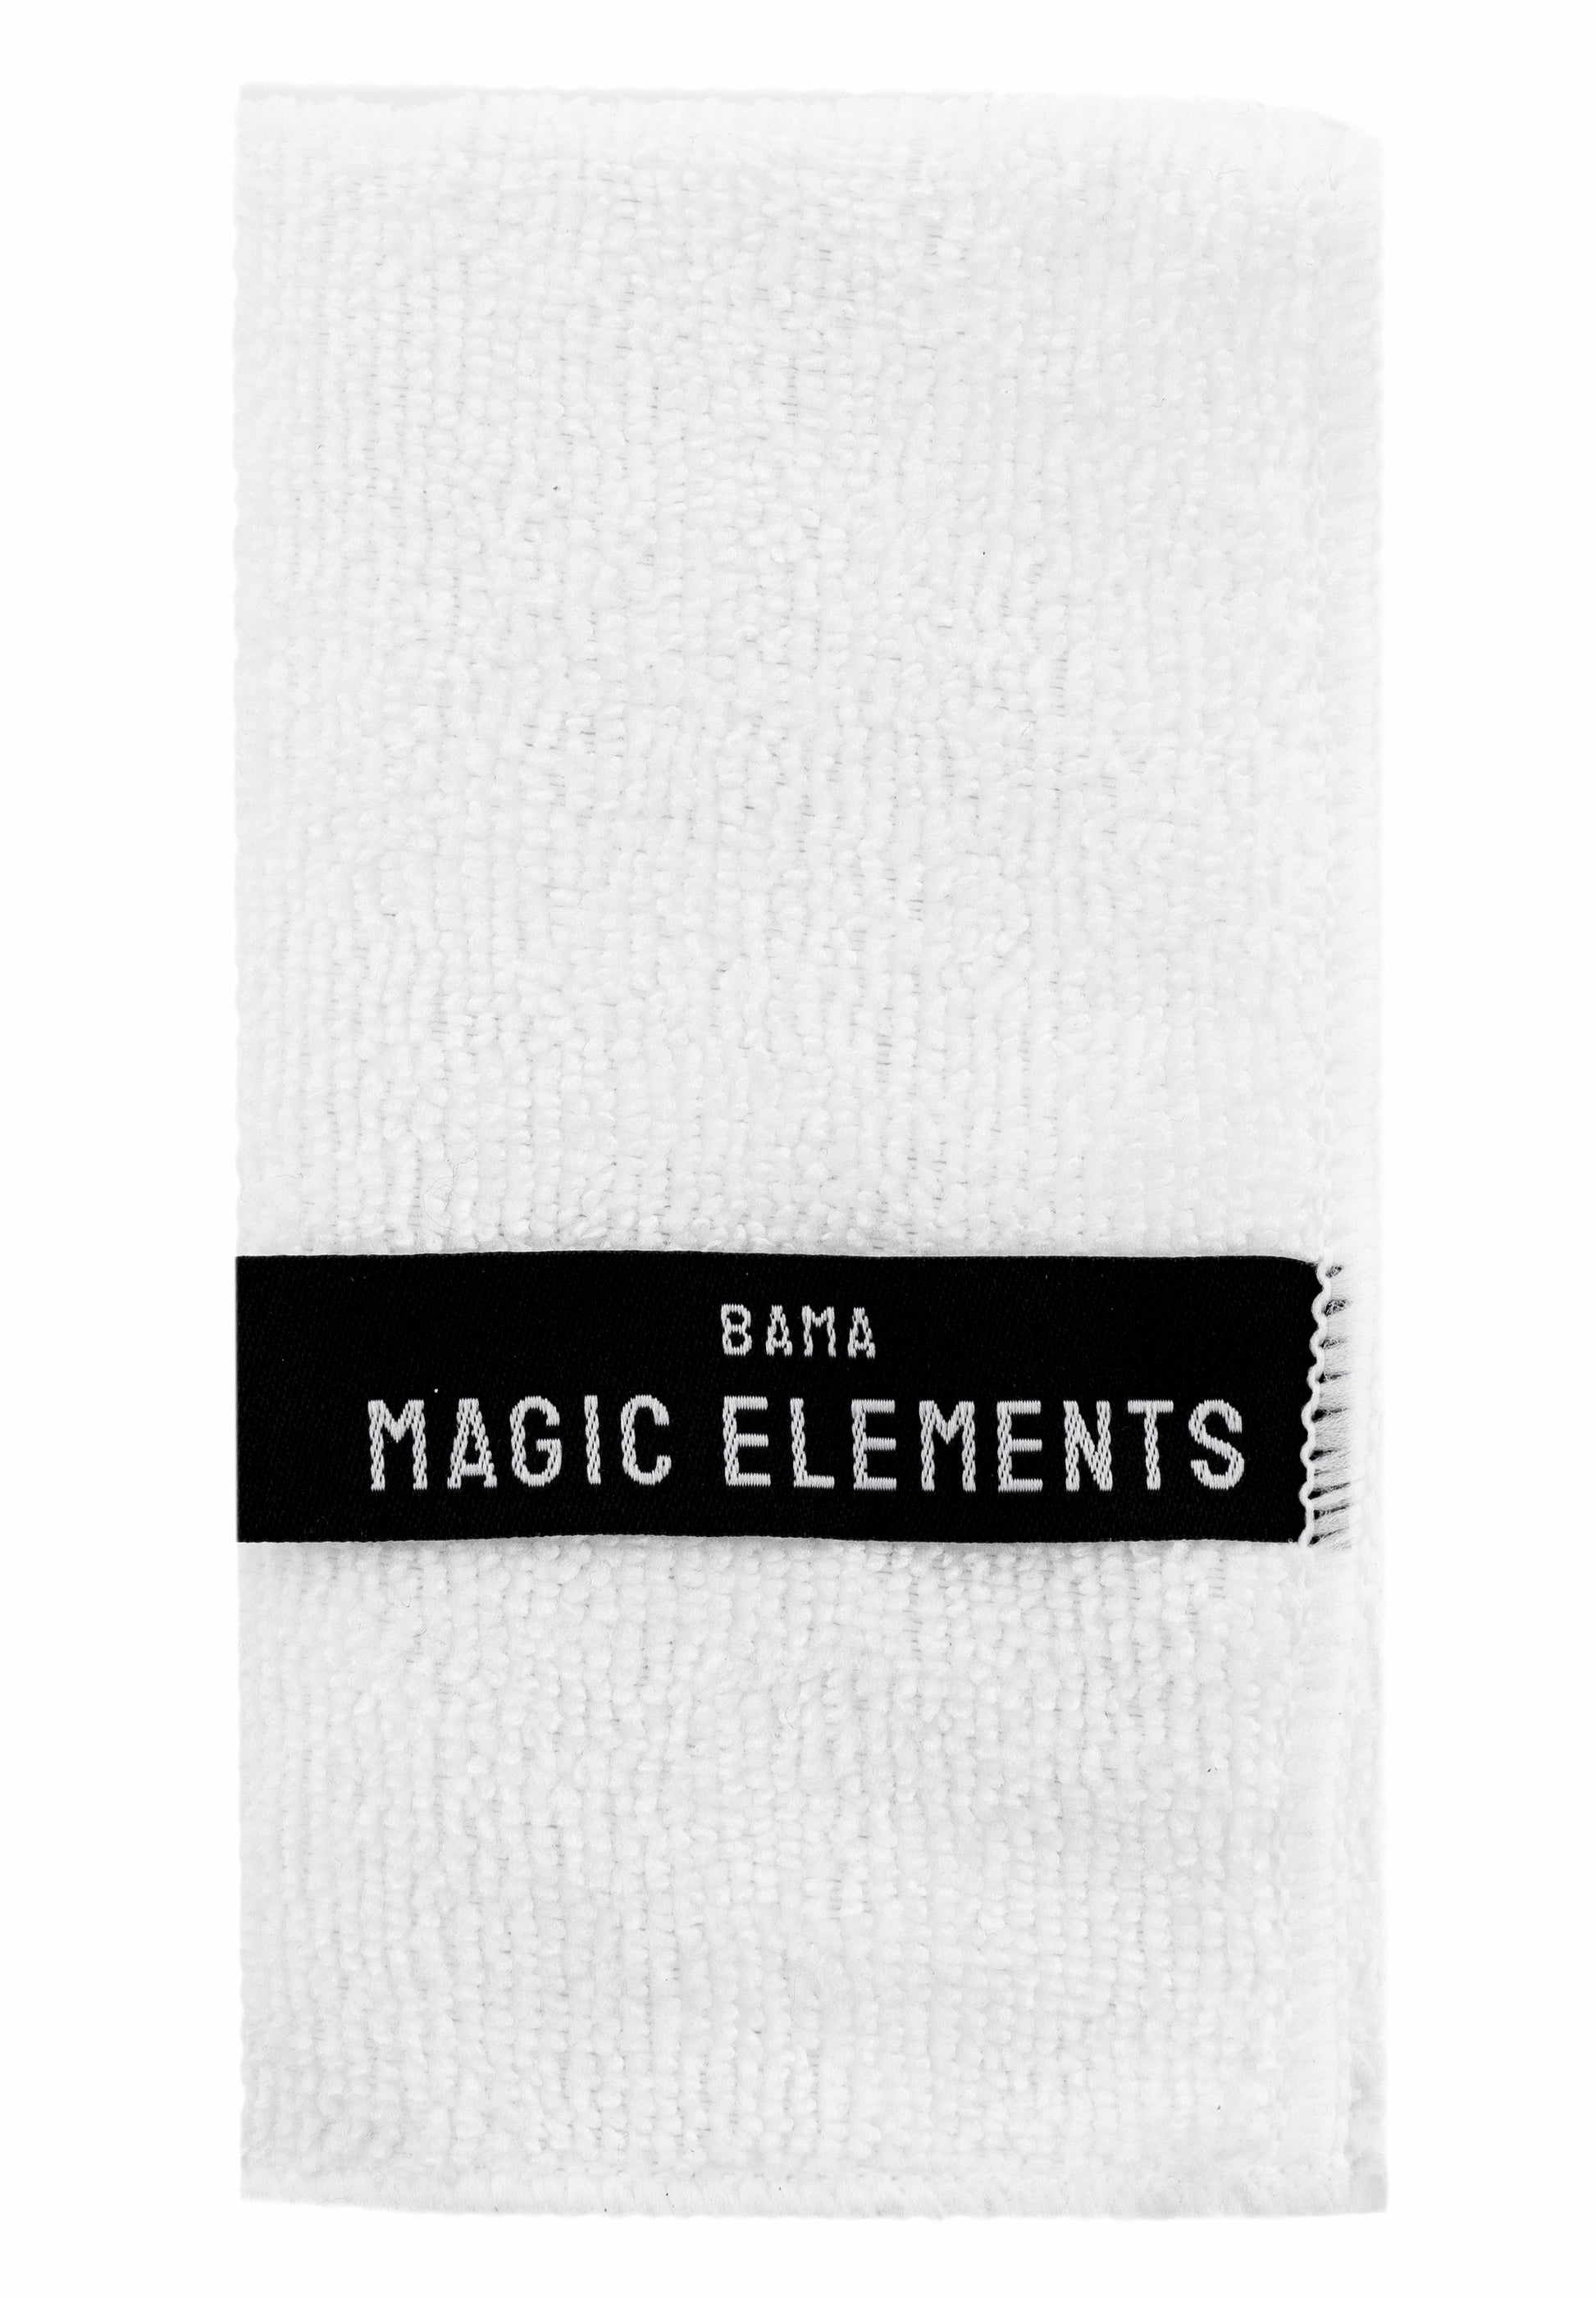 Foto eines Pflegetuches mit dem Namen Magic Elements von Bama. Dieser Lappen ist weiß, aus weicher Kunstfaser gefertigt und für das Nachpolieren von frisch gepflegten Schuhen gedacht.